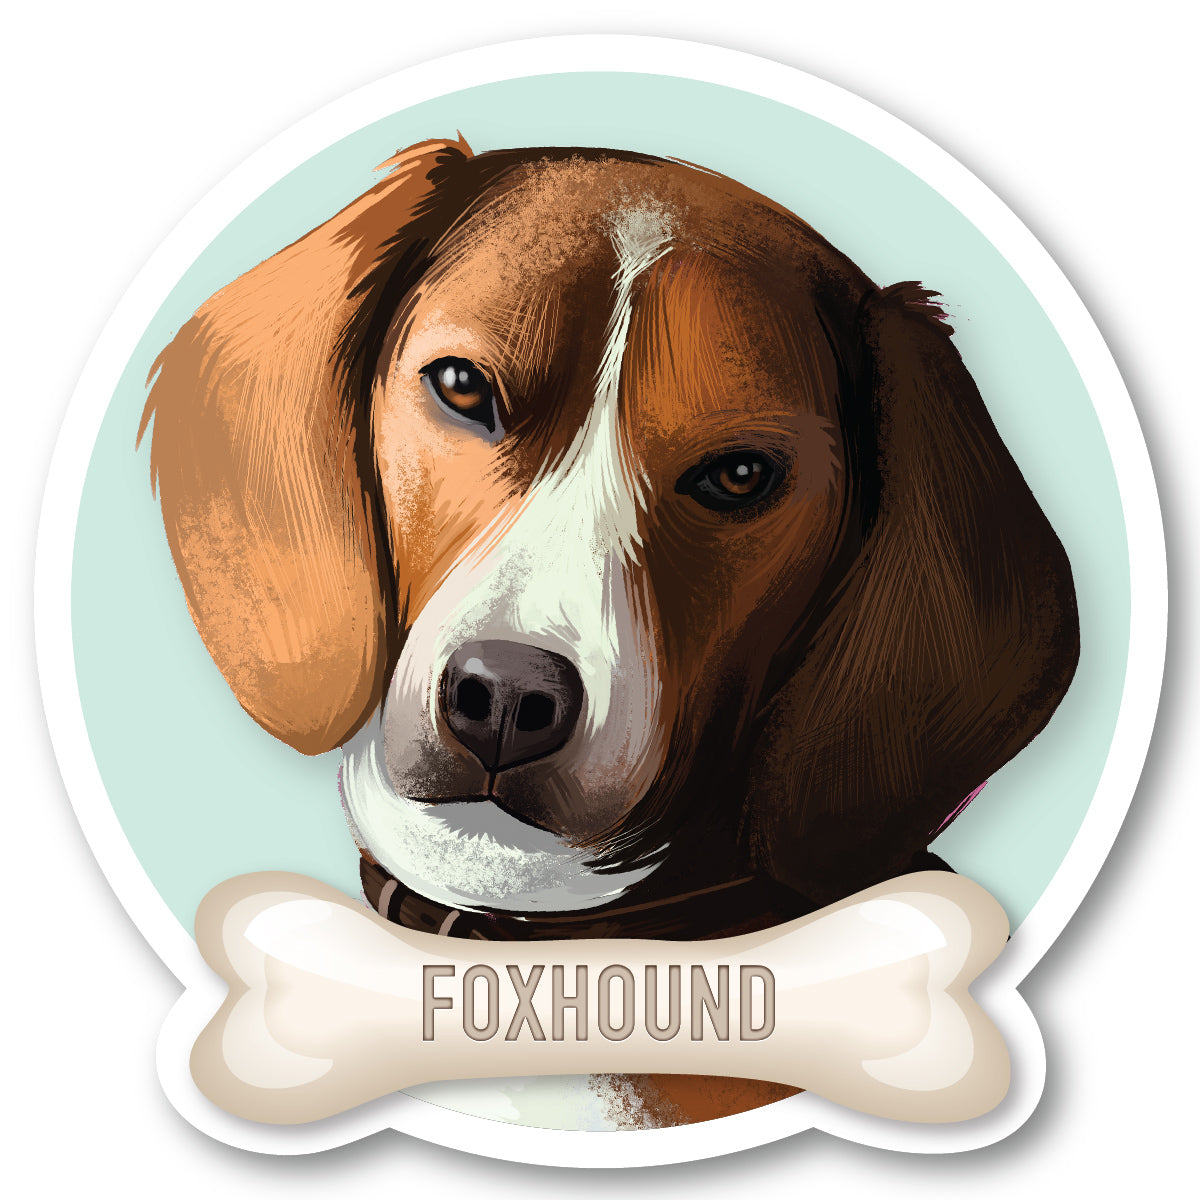 Foxhound Vinyl Sticker